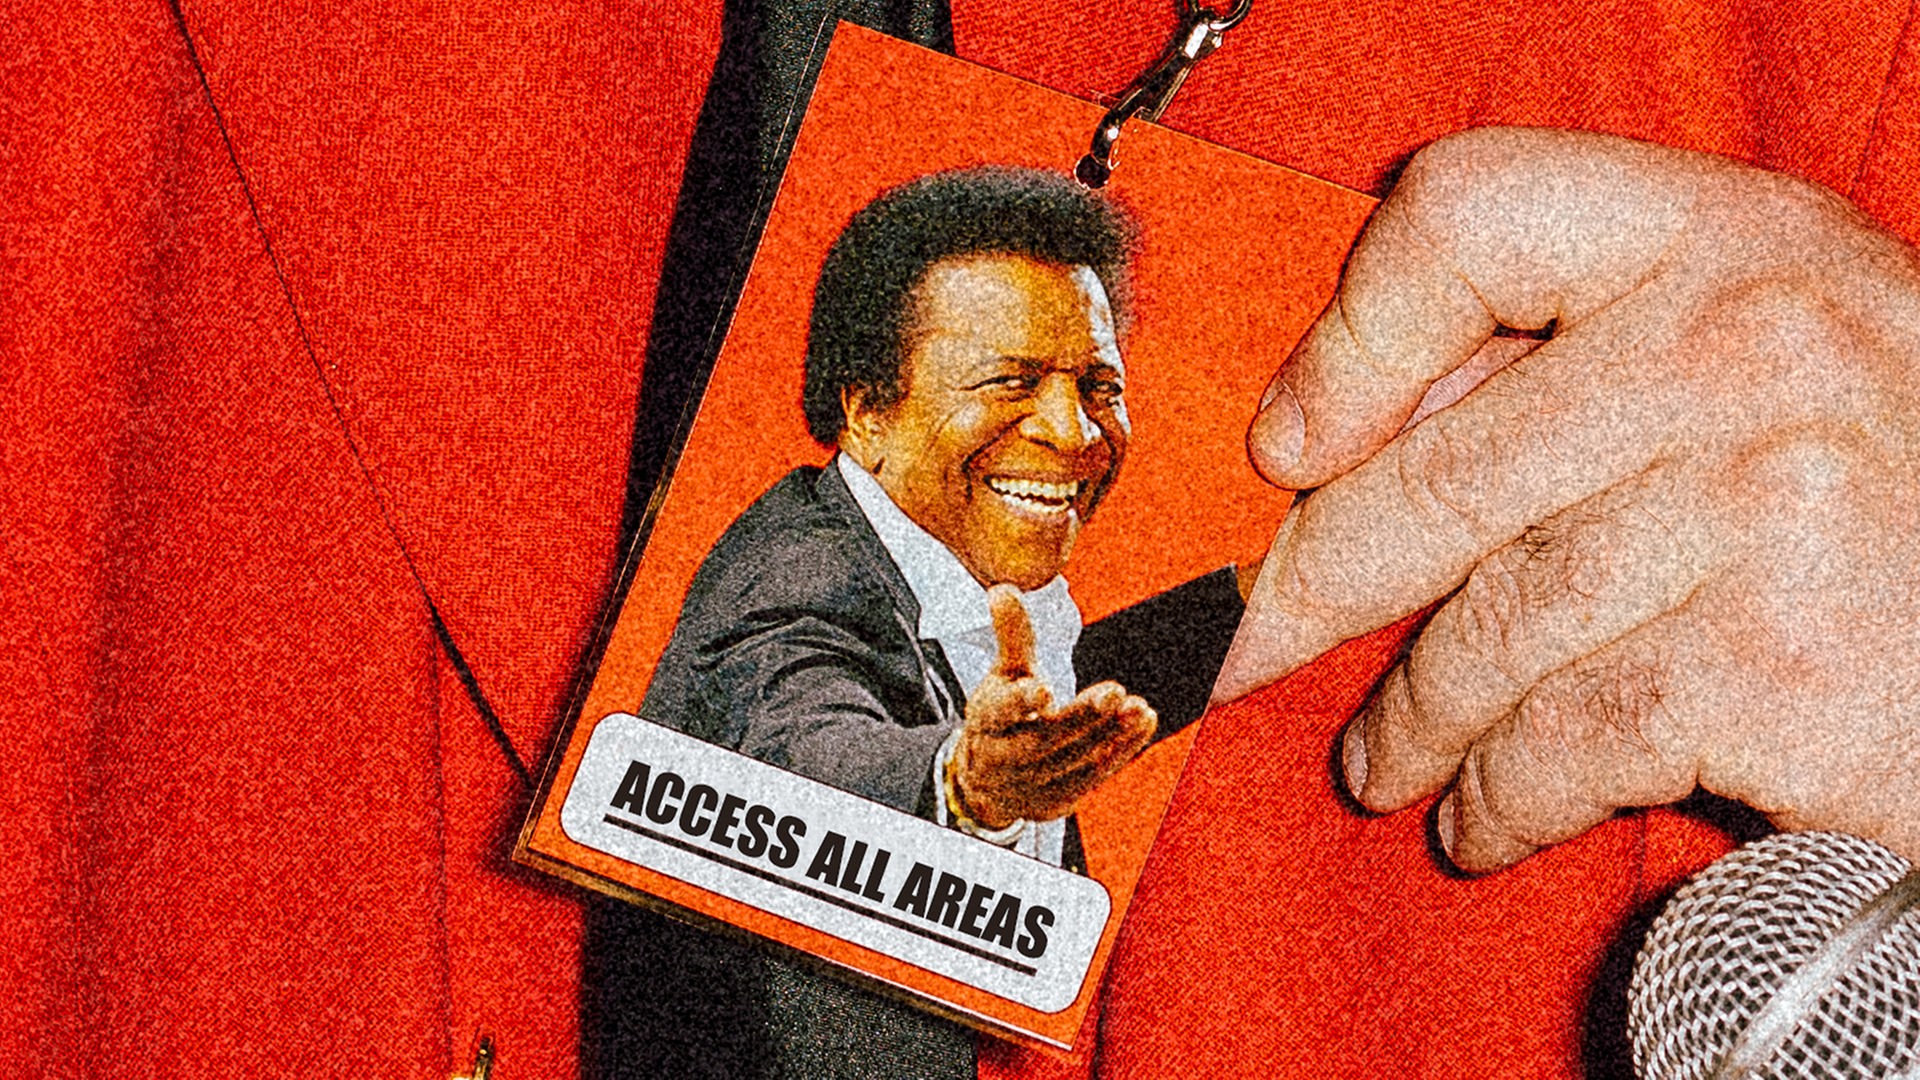 Die Grafik zeigt ein Bild von Roberto Blanco auf einer Akkreditierungskarte, die Zugang zu allen Bereichen gewährt. Diese wird von jemandem getragen und vorgezeigt, der ein rotes Jacket trägt - das Gesicht desjenigen sieht man nicht. 